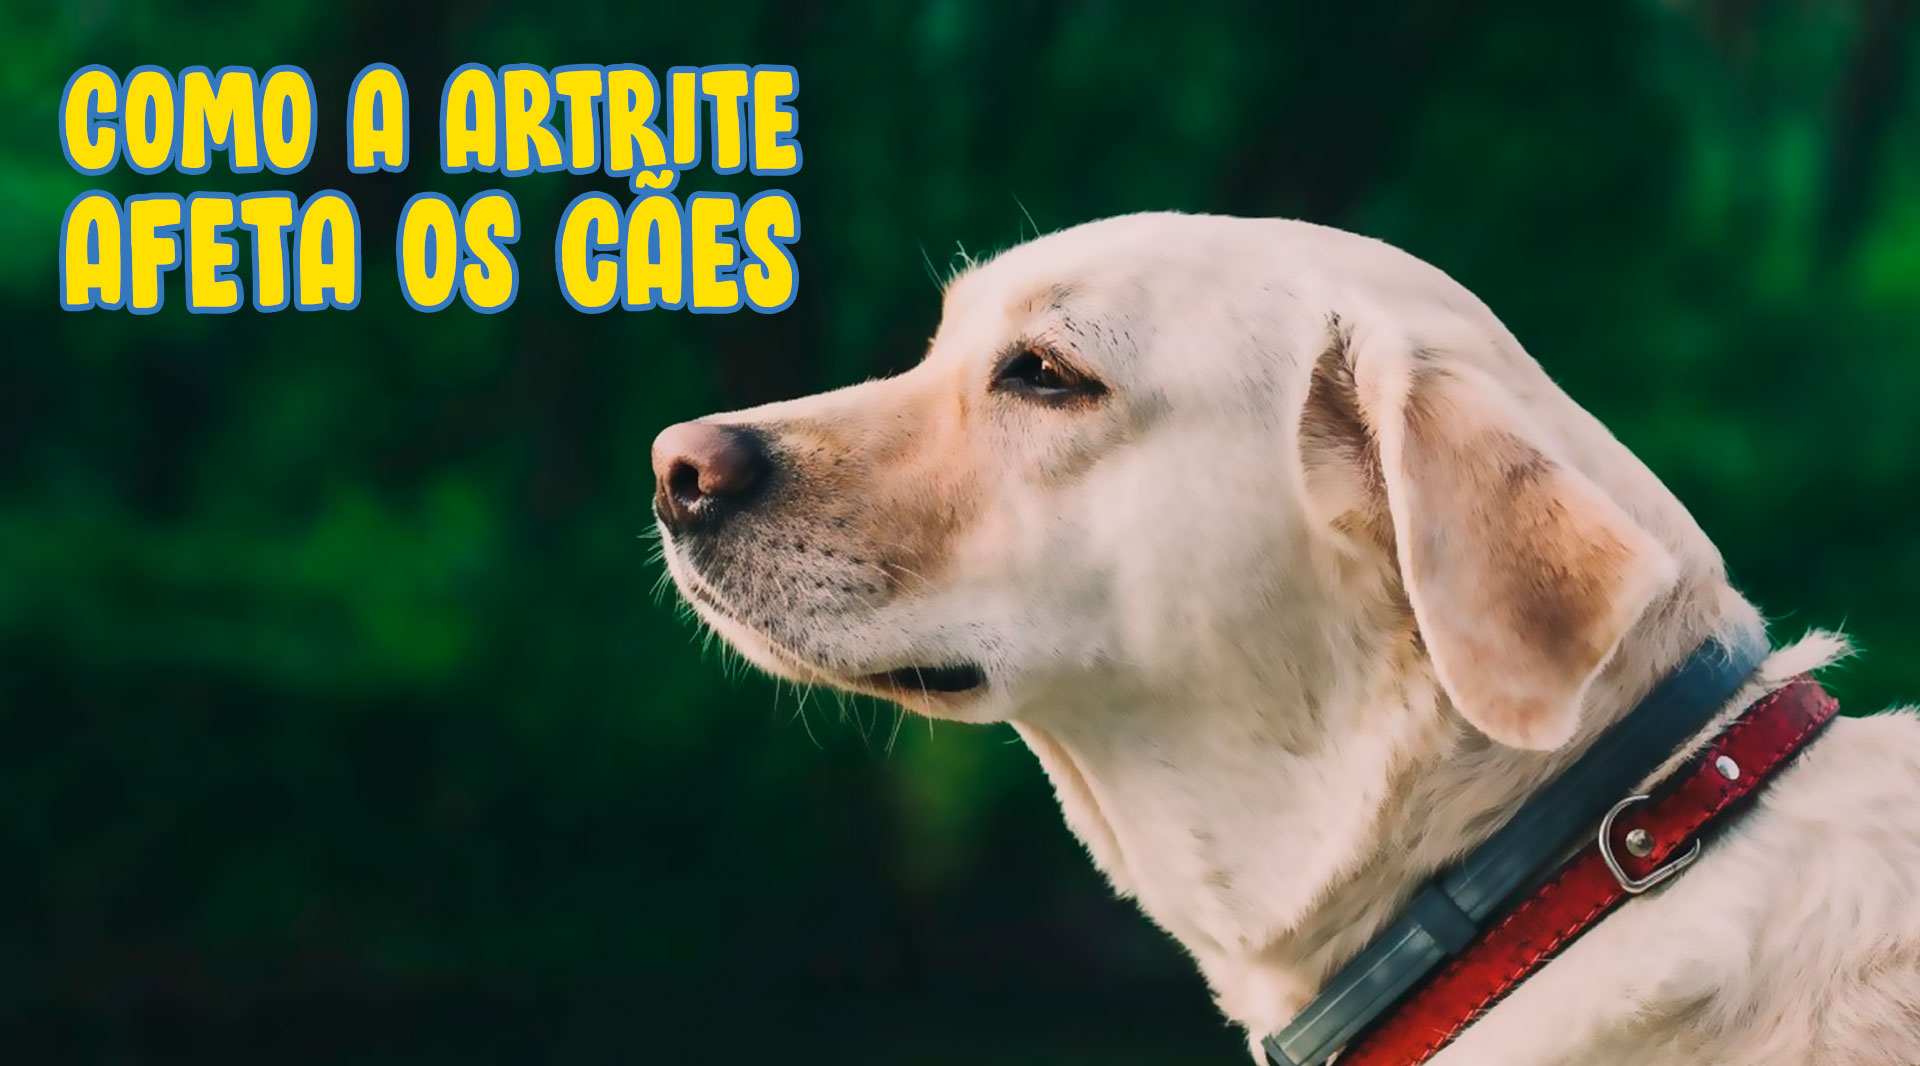 Como a artrite afeta os cães